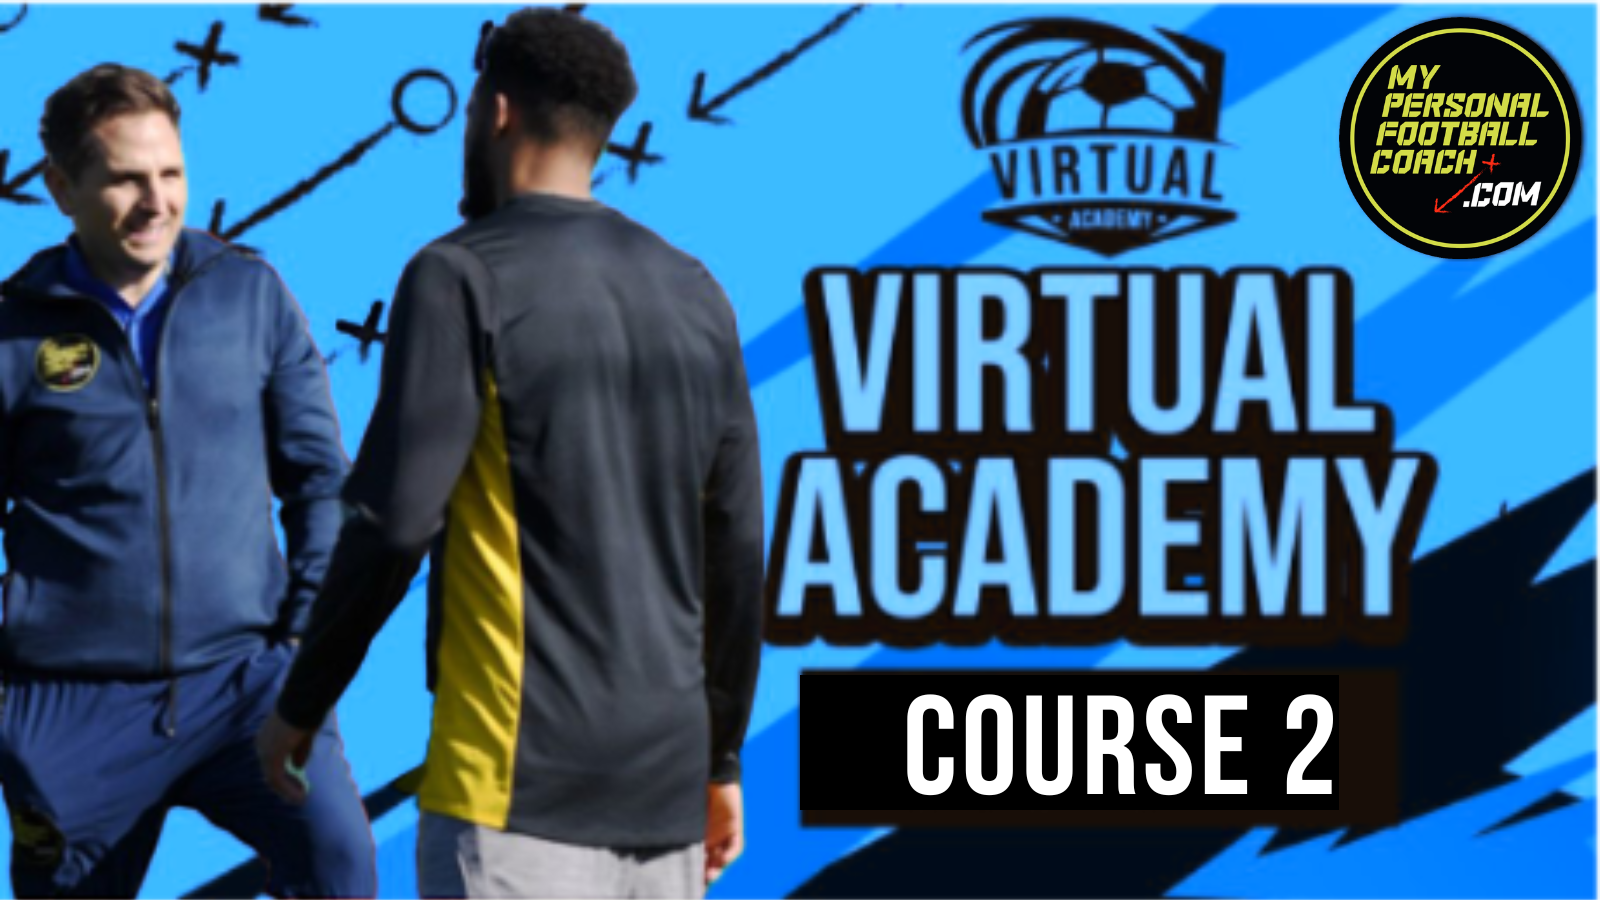 Virtual Academy Course